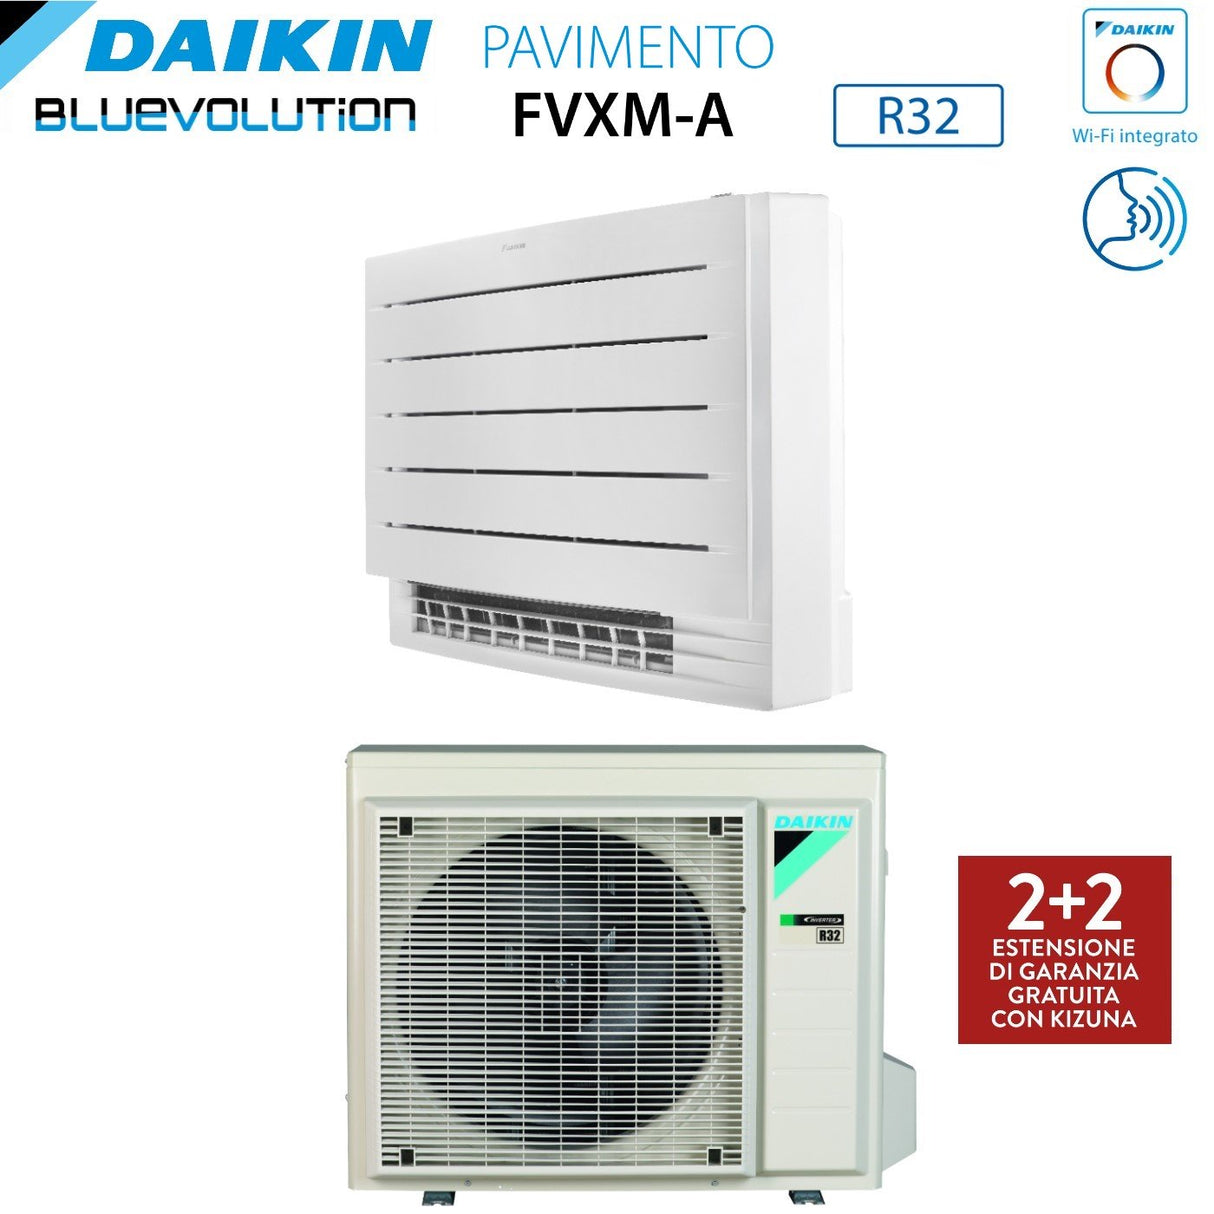 immagine-3-daikin-climatizzatore-condizionatore-daikin-bluevolution-perfera-a-pavimento-9000-btu-fvxm25a-r-32-wi-fi-integrato-telecomando-a-infrarossi-incluso-garanzia-italiana-novita